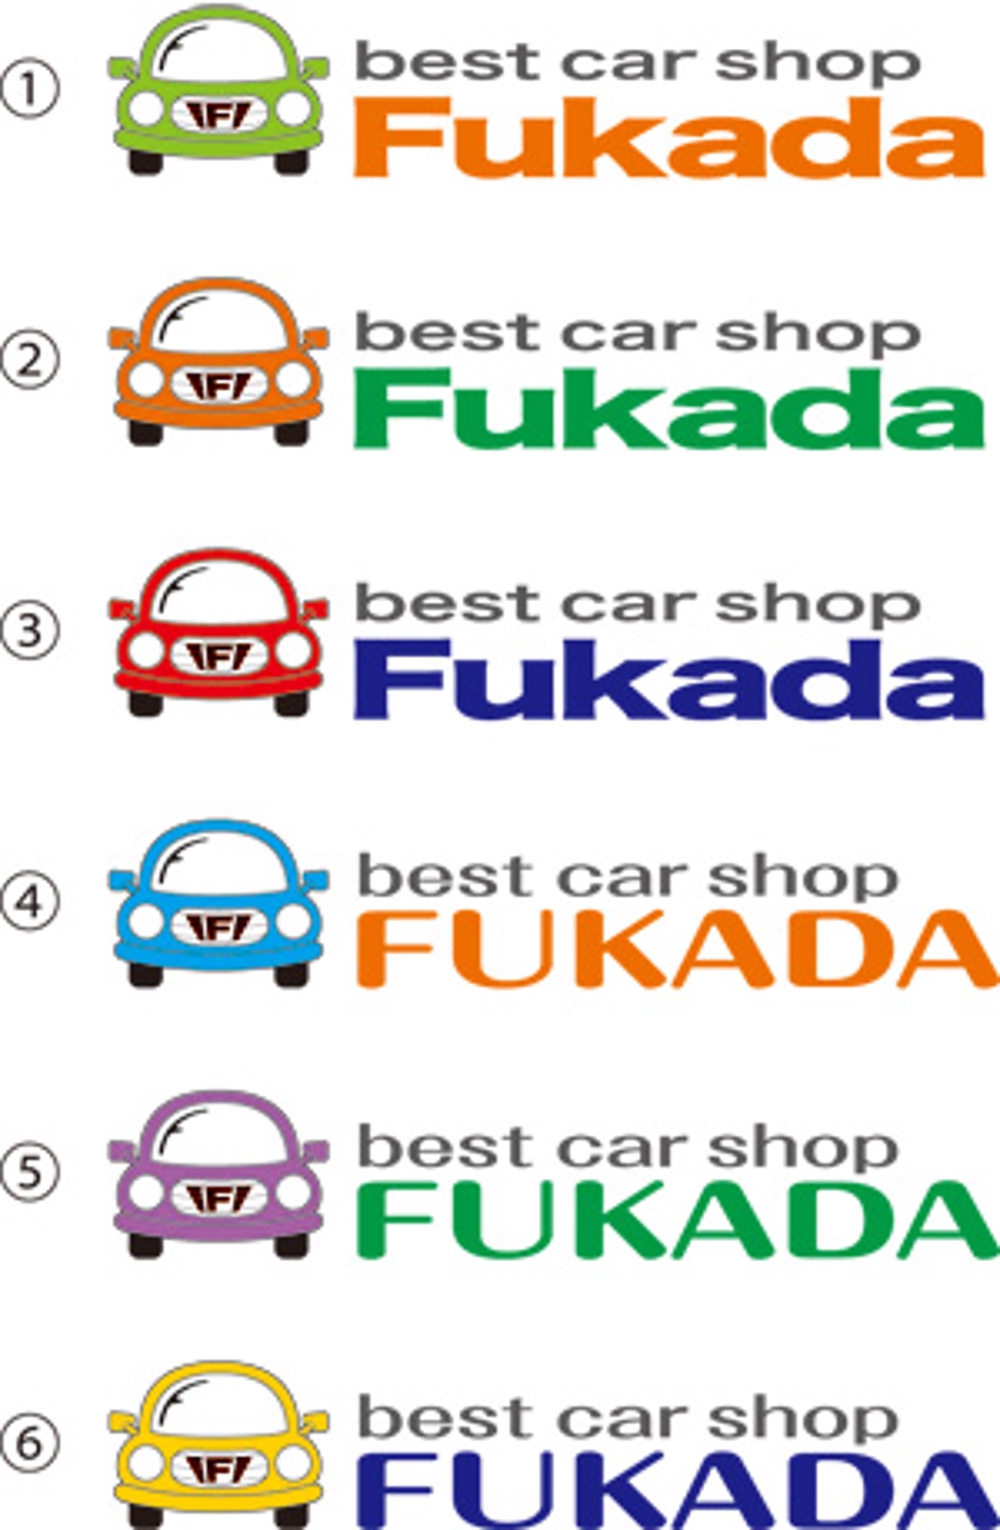 FUKADA様のロゴ提案.jpg